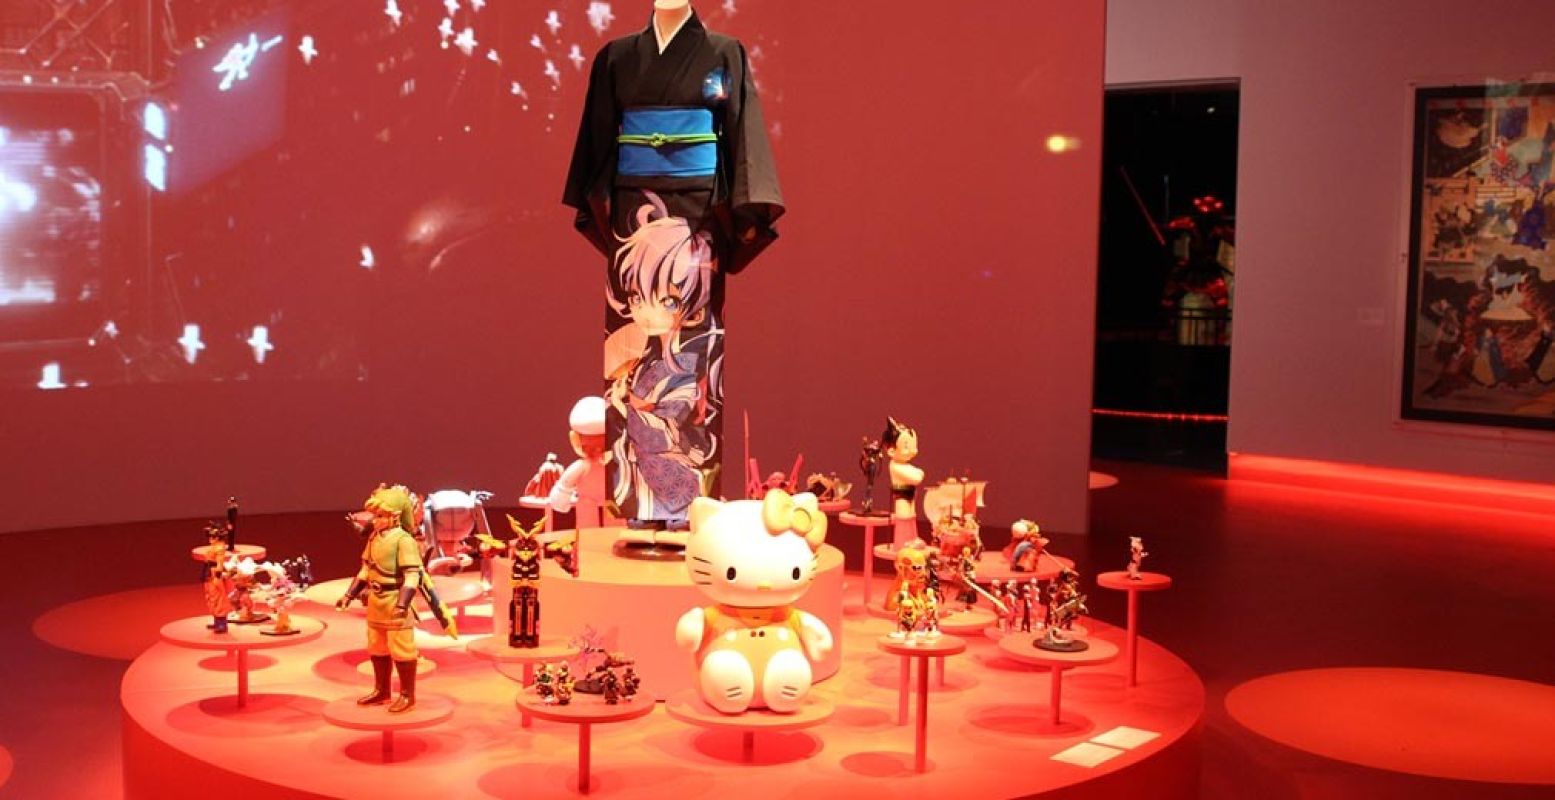 Iconen uit de Japanse cultuur: de kimono, Hello Kitty, Pokémon, Super Mario en meer. Foto: DagjeWeg.NL.